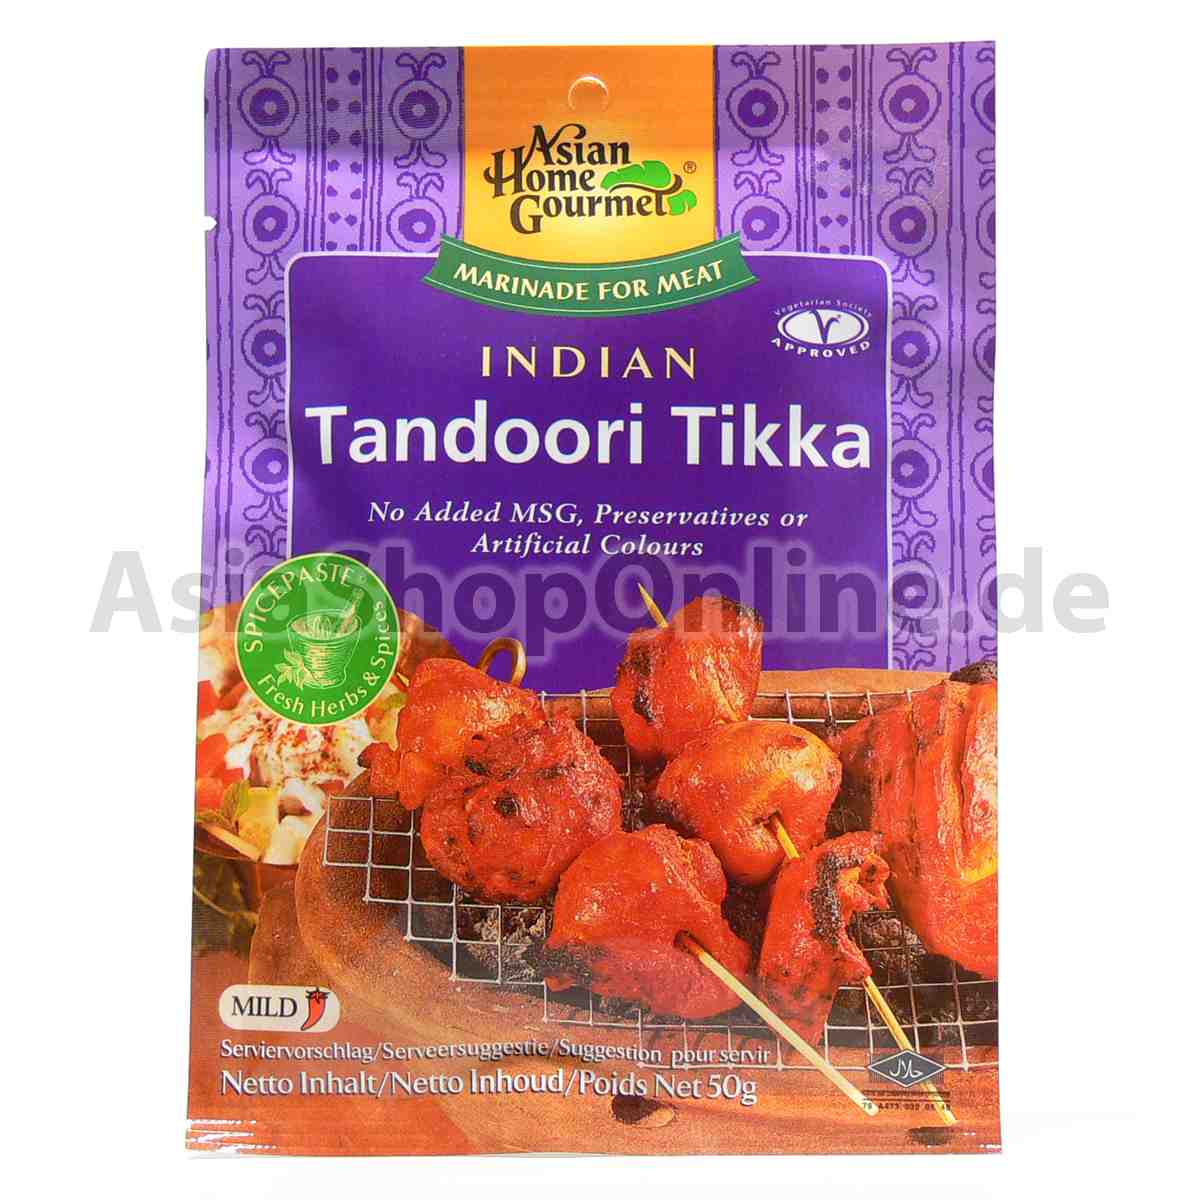 Marinade für indisches Tandoori Tikka - Asian Home Gourmet - 50g